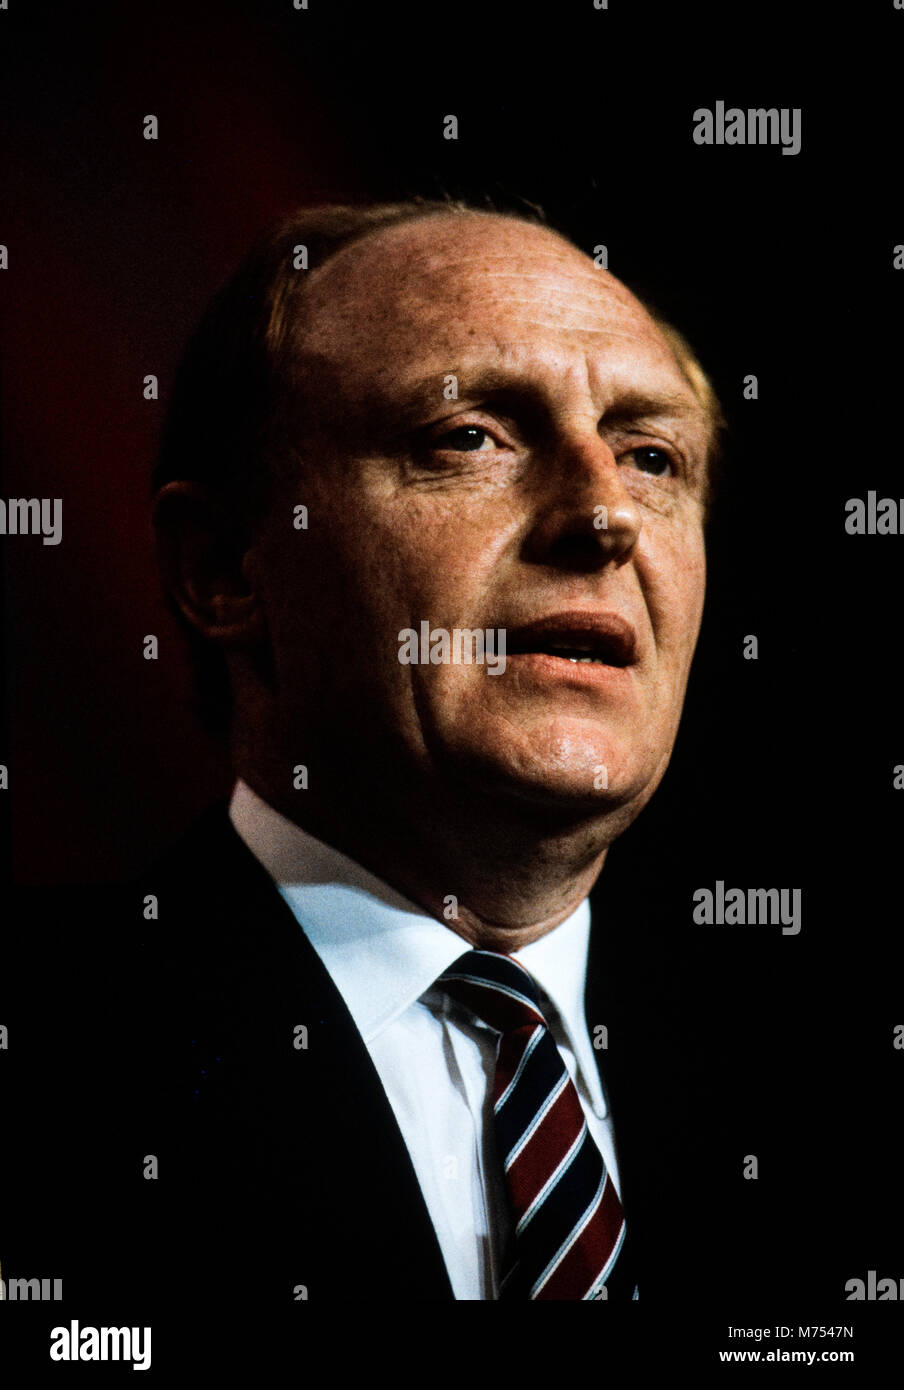 Neil Kinnock al Partito laburista Conferenza, Bournmouth in ottobre 1985 Neil Gordon Kinnock, Baron Kinnock, PC (nato il 28 marzo 1942) è un partito laburista britannico politico. Ha servito come un membro del Parlamento europeo dal 1970 fino al 1995, prima per Bedwellty e poi per Islwyn. Egli è stato il leader del partito laburista e il leader dell opposizione dal 1983 fino al 1992. Kinnock ha portato il partito laburista per una sorpresa la quarta sconfitta consecutiva al 1992 elezione generale, nonostante la parte essendo in anticipo nella maggior parte dei sondaggi di opinione; che avevano predetto una stretta vittoria di manodopera o appeso al parlamento. In seguito, egli resig Foto Stock